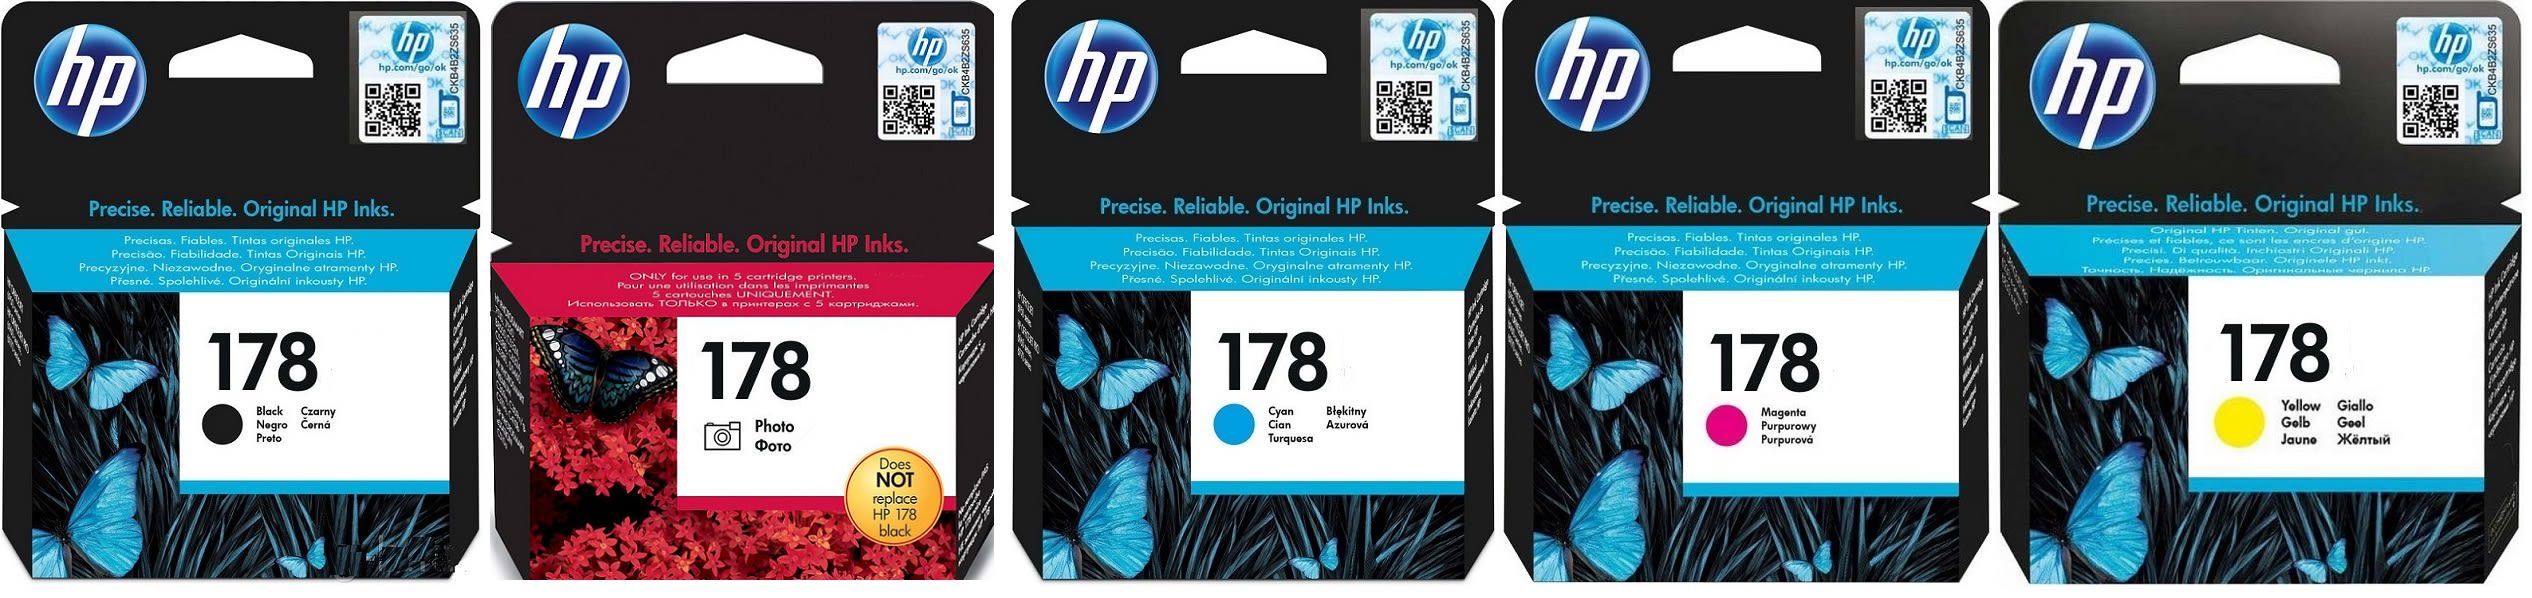 Картриджи hp 178 для HP Photosmart Premium Fax AiO C309a. Купить комплект оригинальных картриджей.